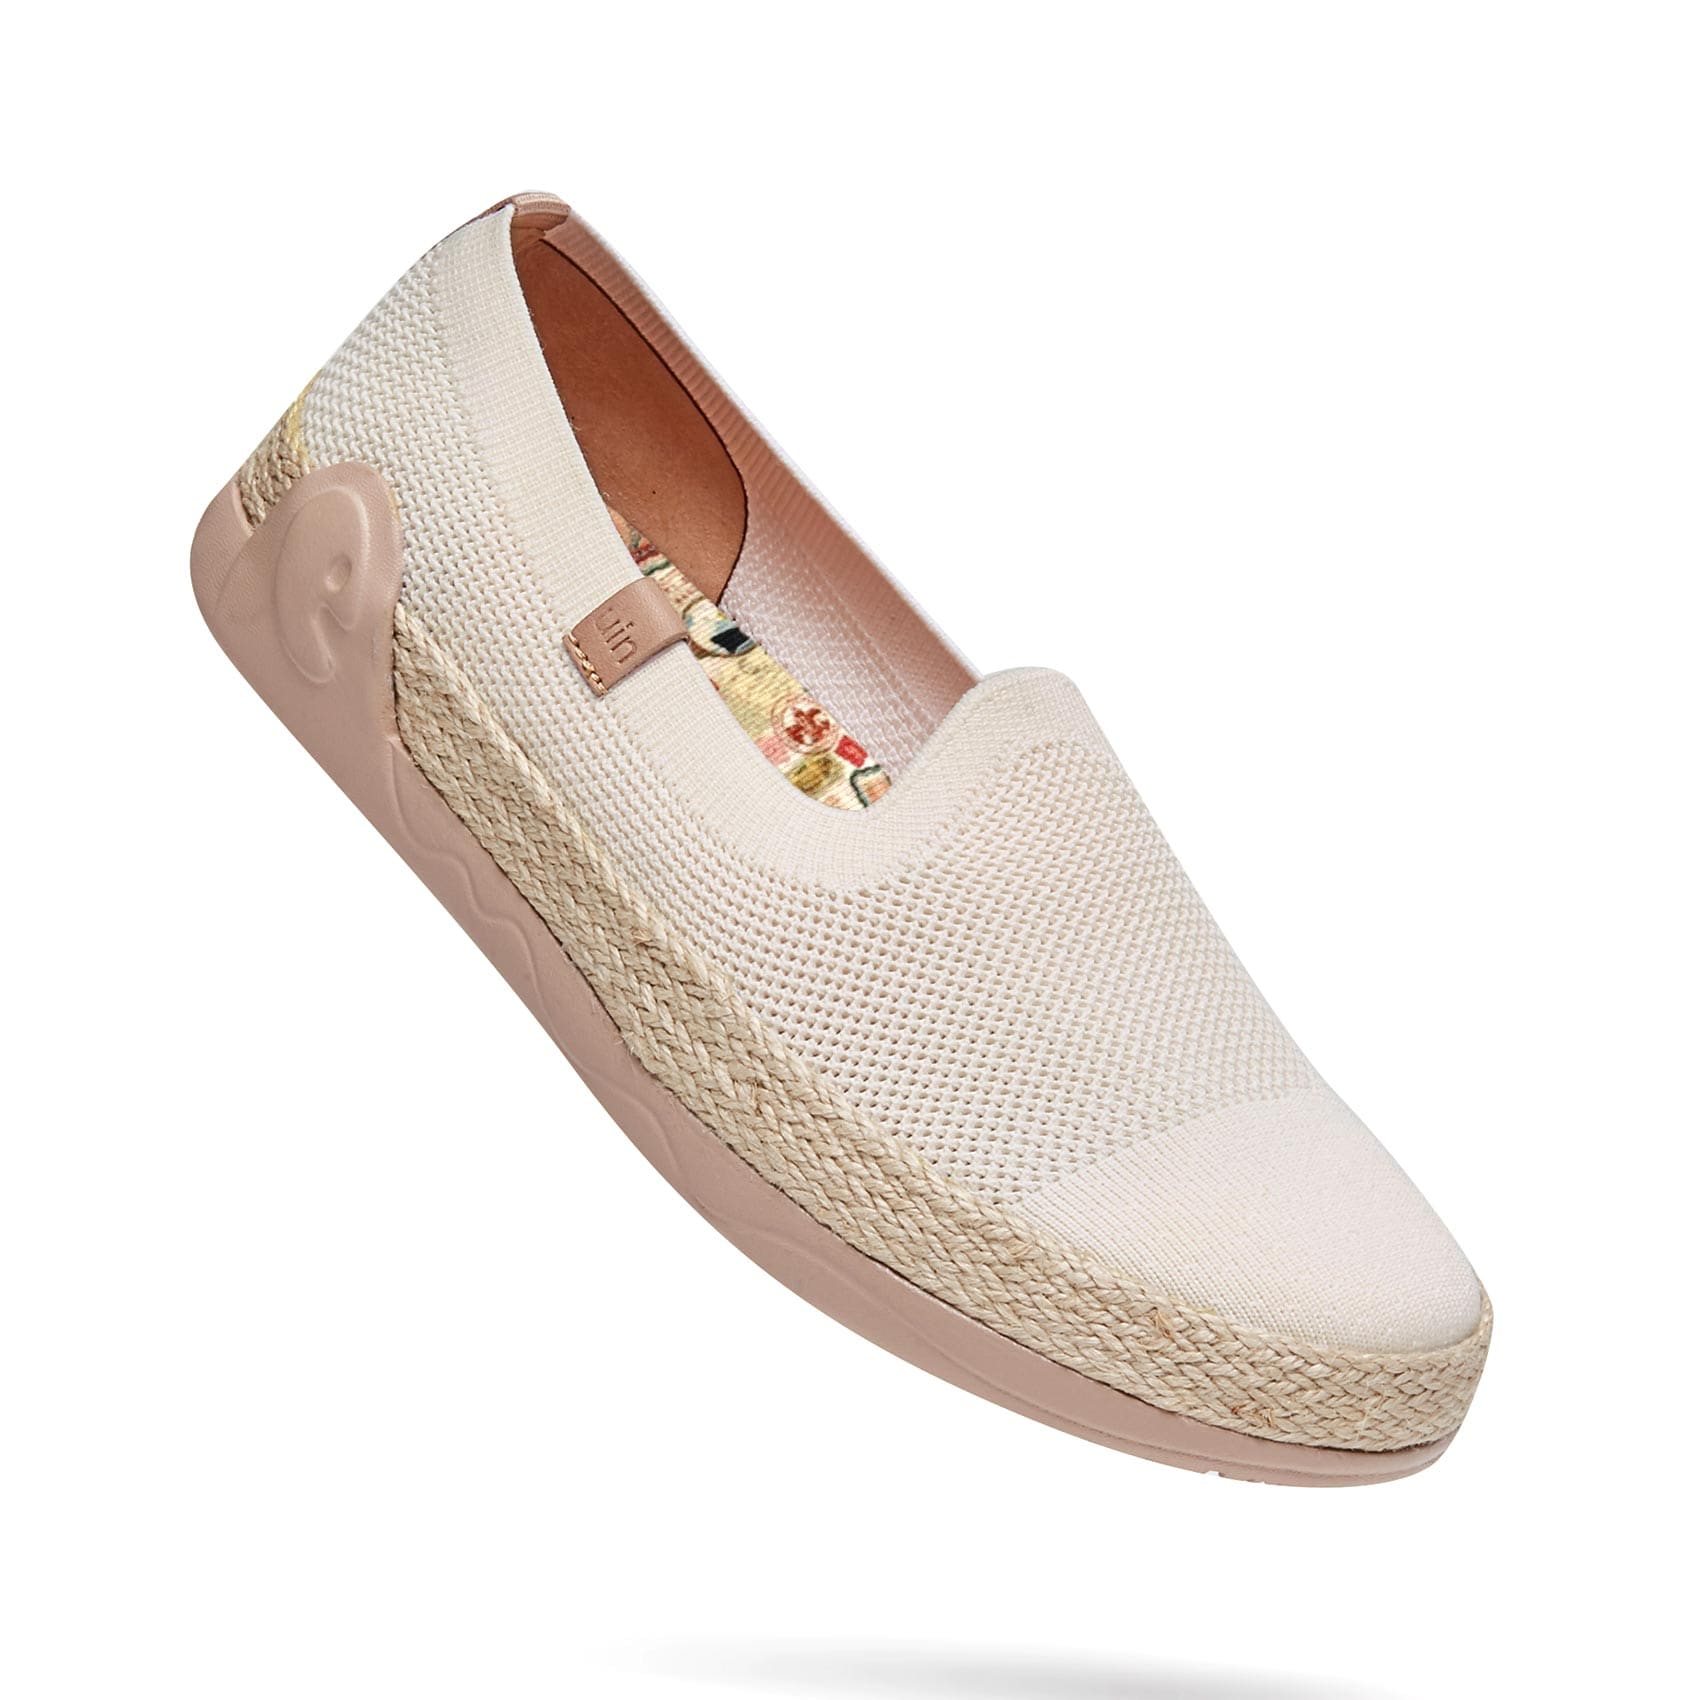 UIN Footwear Women Marbella II Creamy-white Canvas loafers